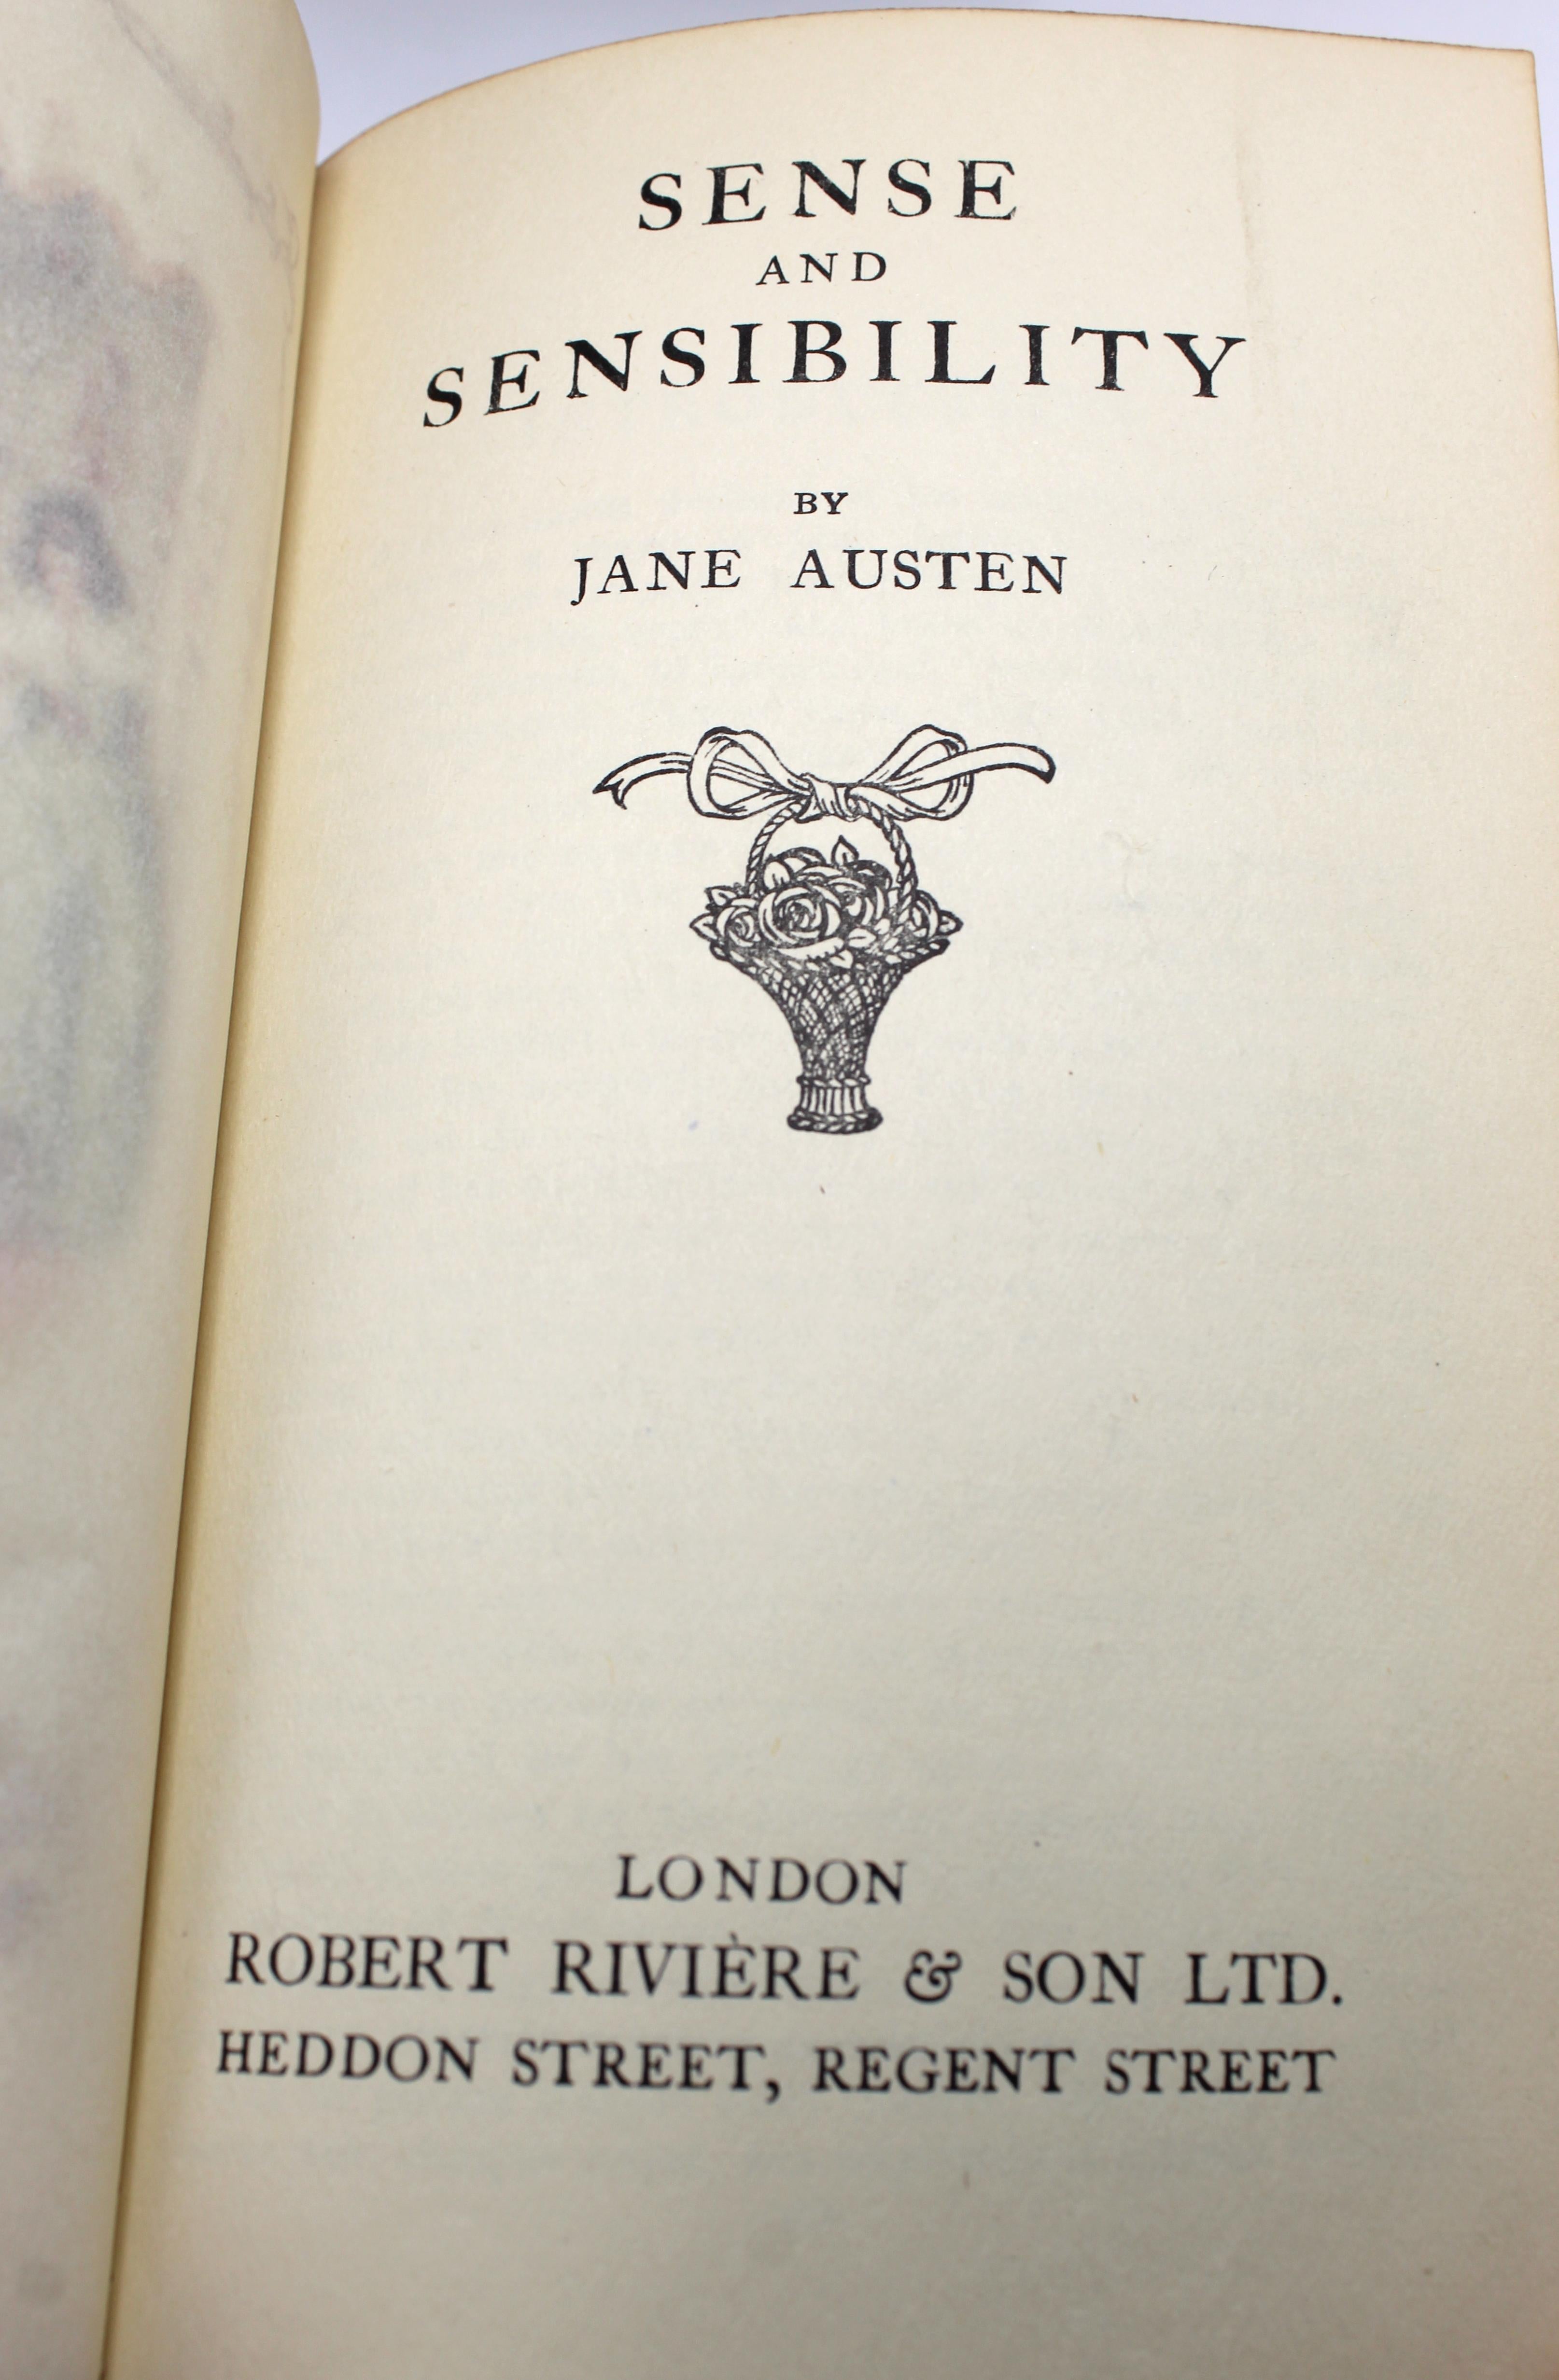 Jane Austen's Werke, herausgegeben von Robert Riviere & Son, fünf Bände, 1920er Jahre 1